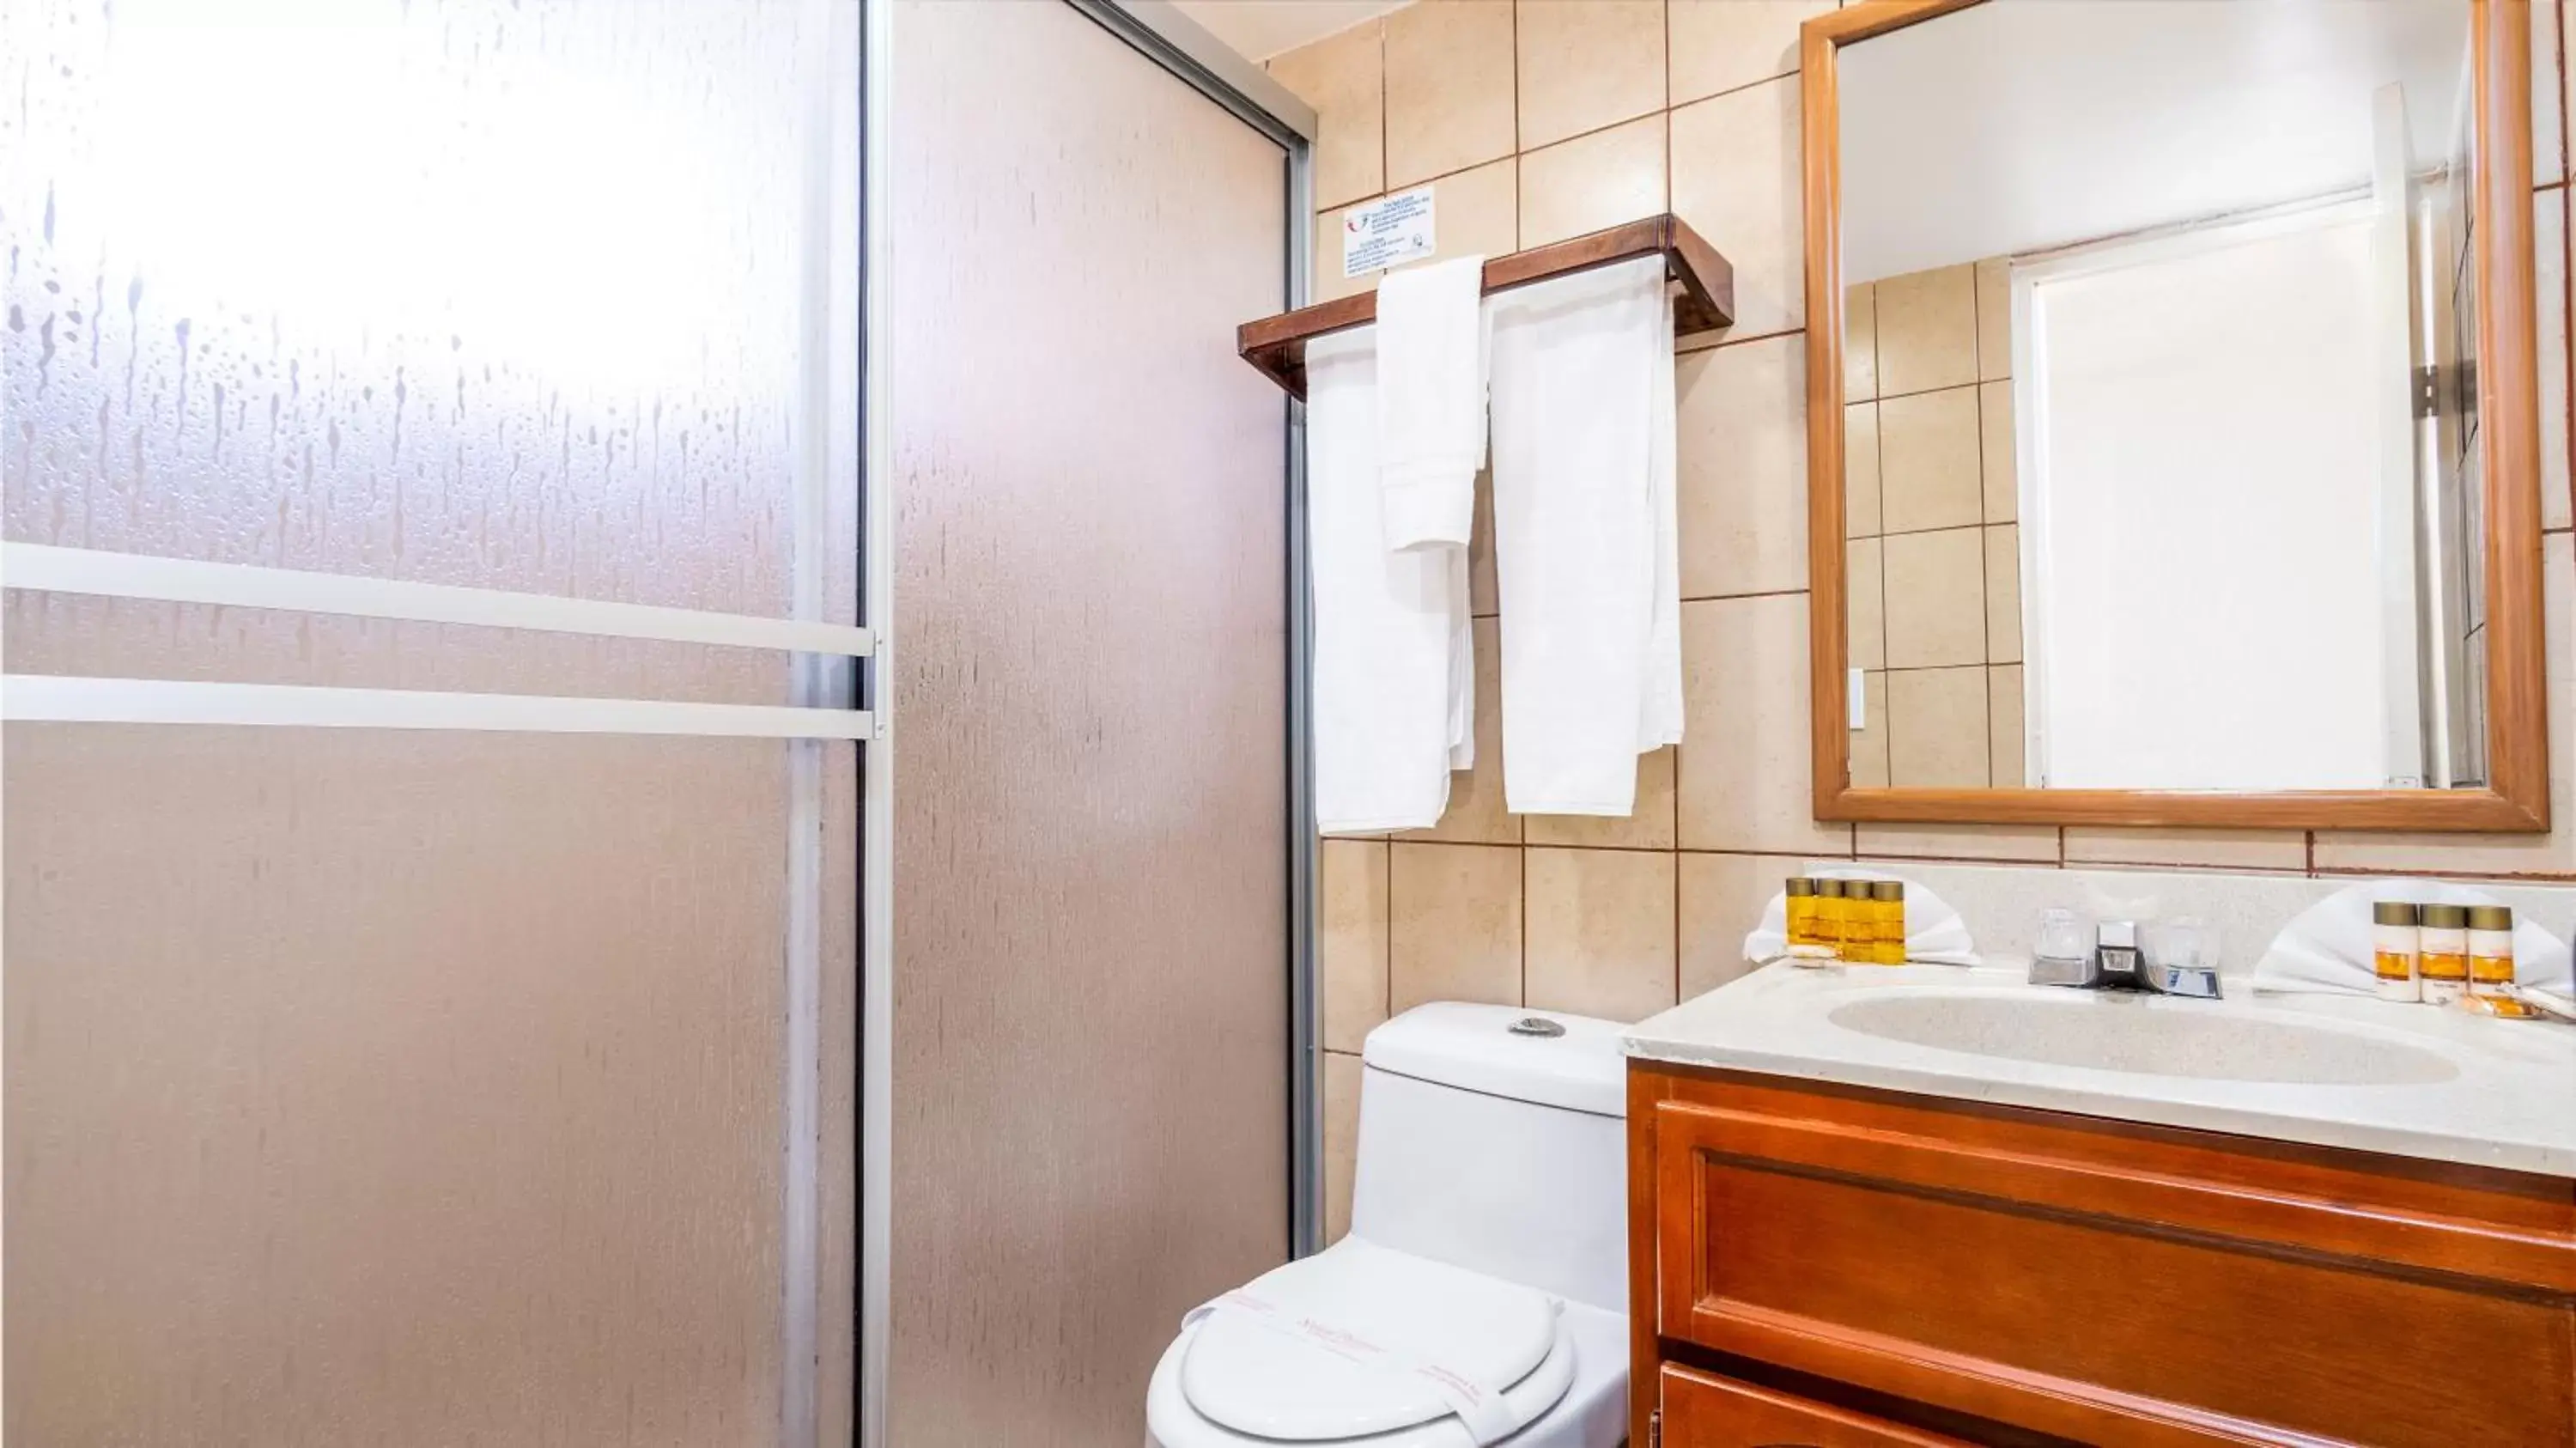 Toilet, Bathroom in Puerto Nuevo Baja Hotel & Villas